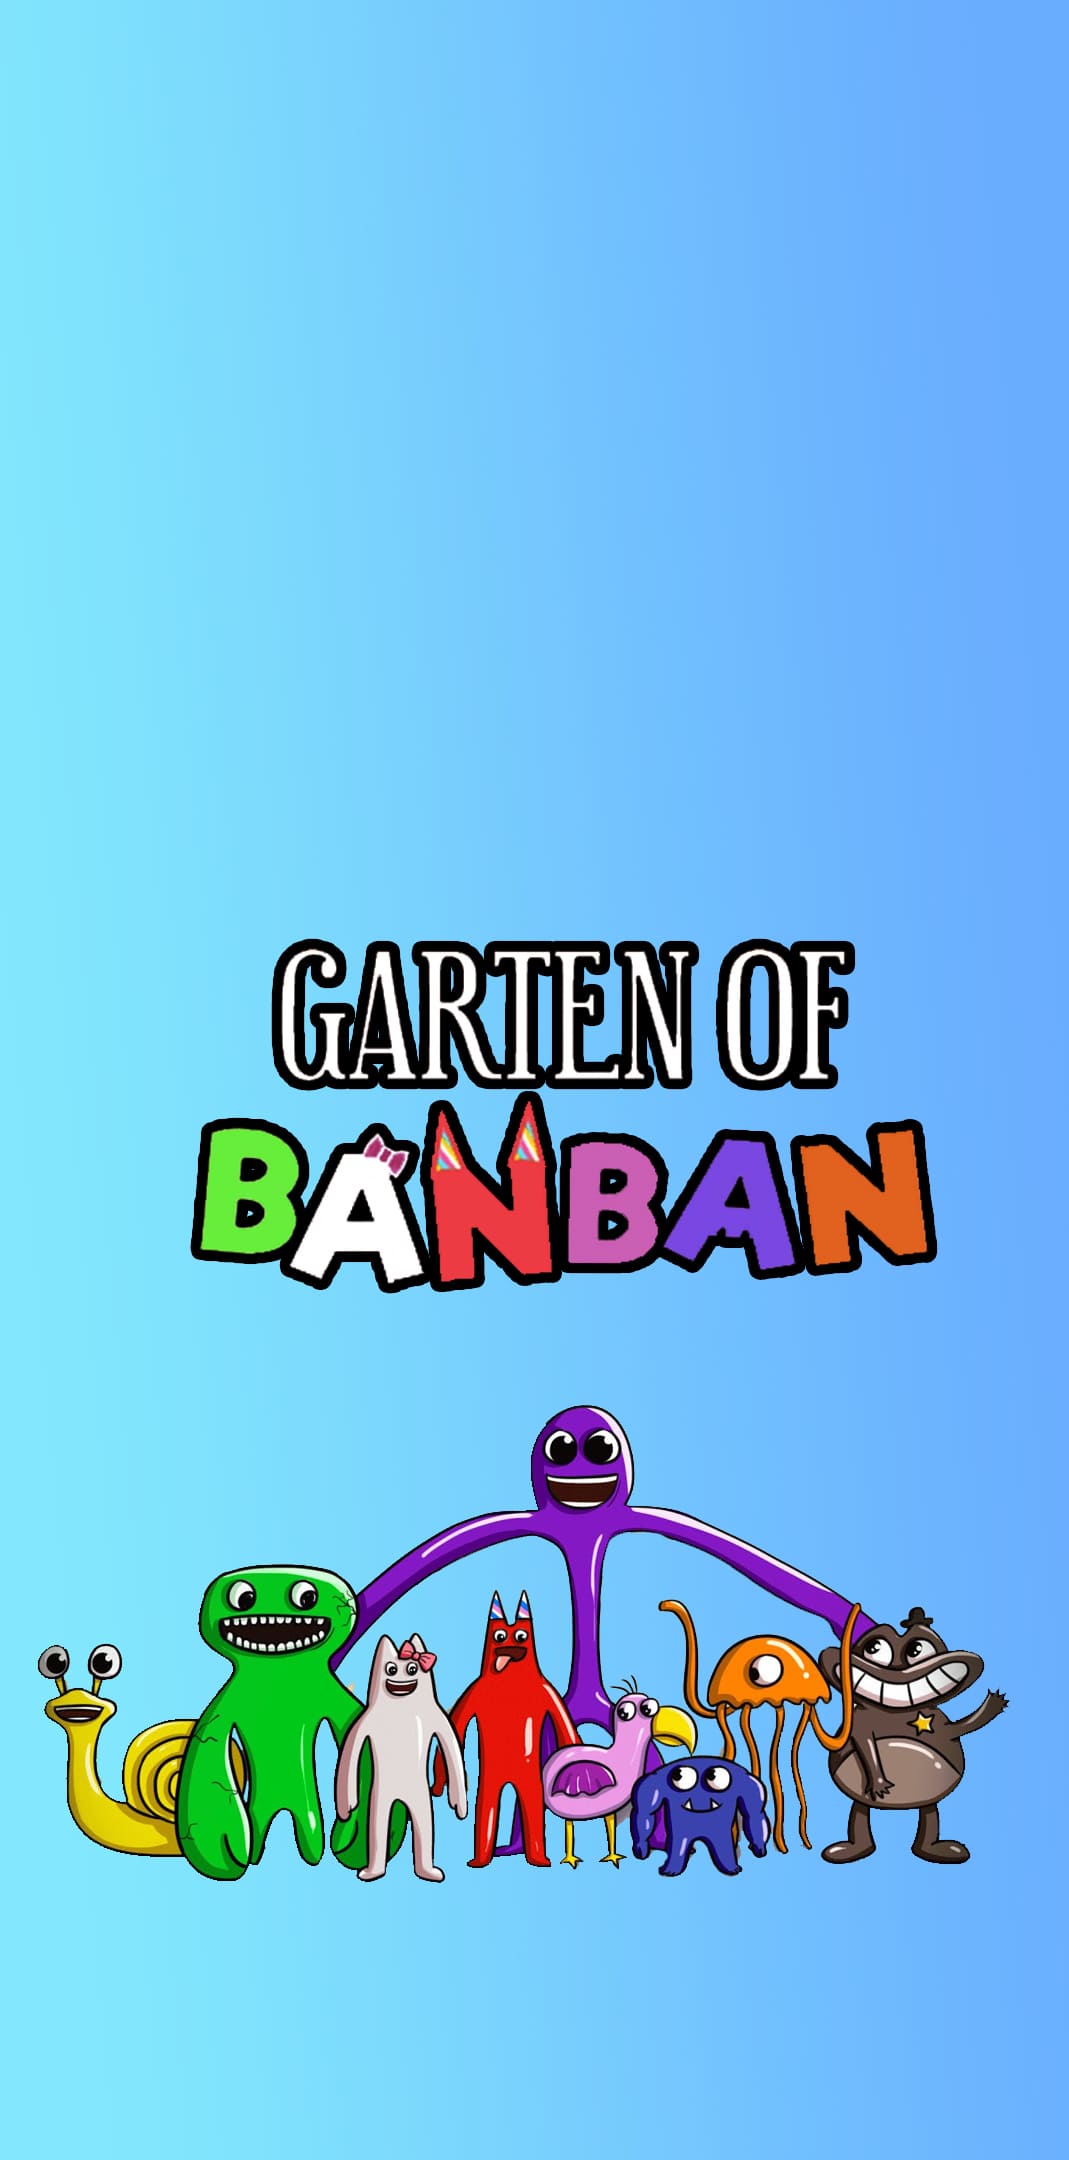 Garten of Banban Wallpapers  Top Free Garten of Banban Backgrounds   WallpaperAccess